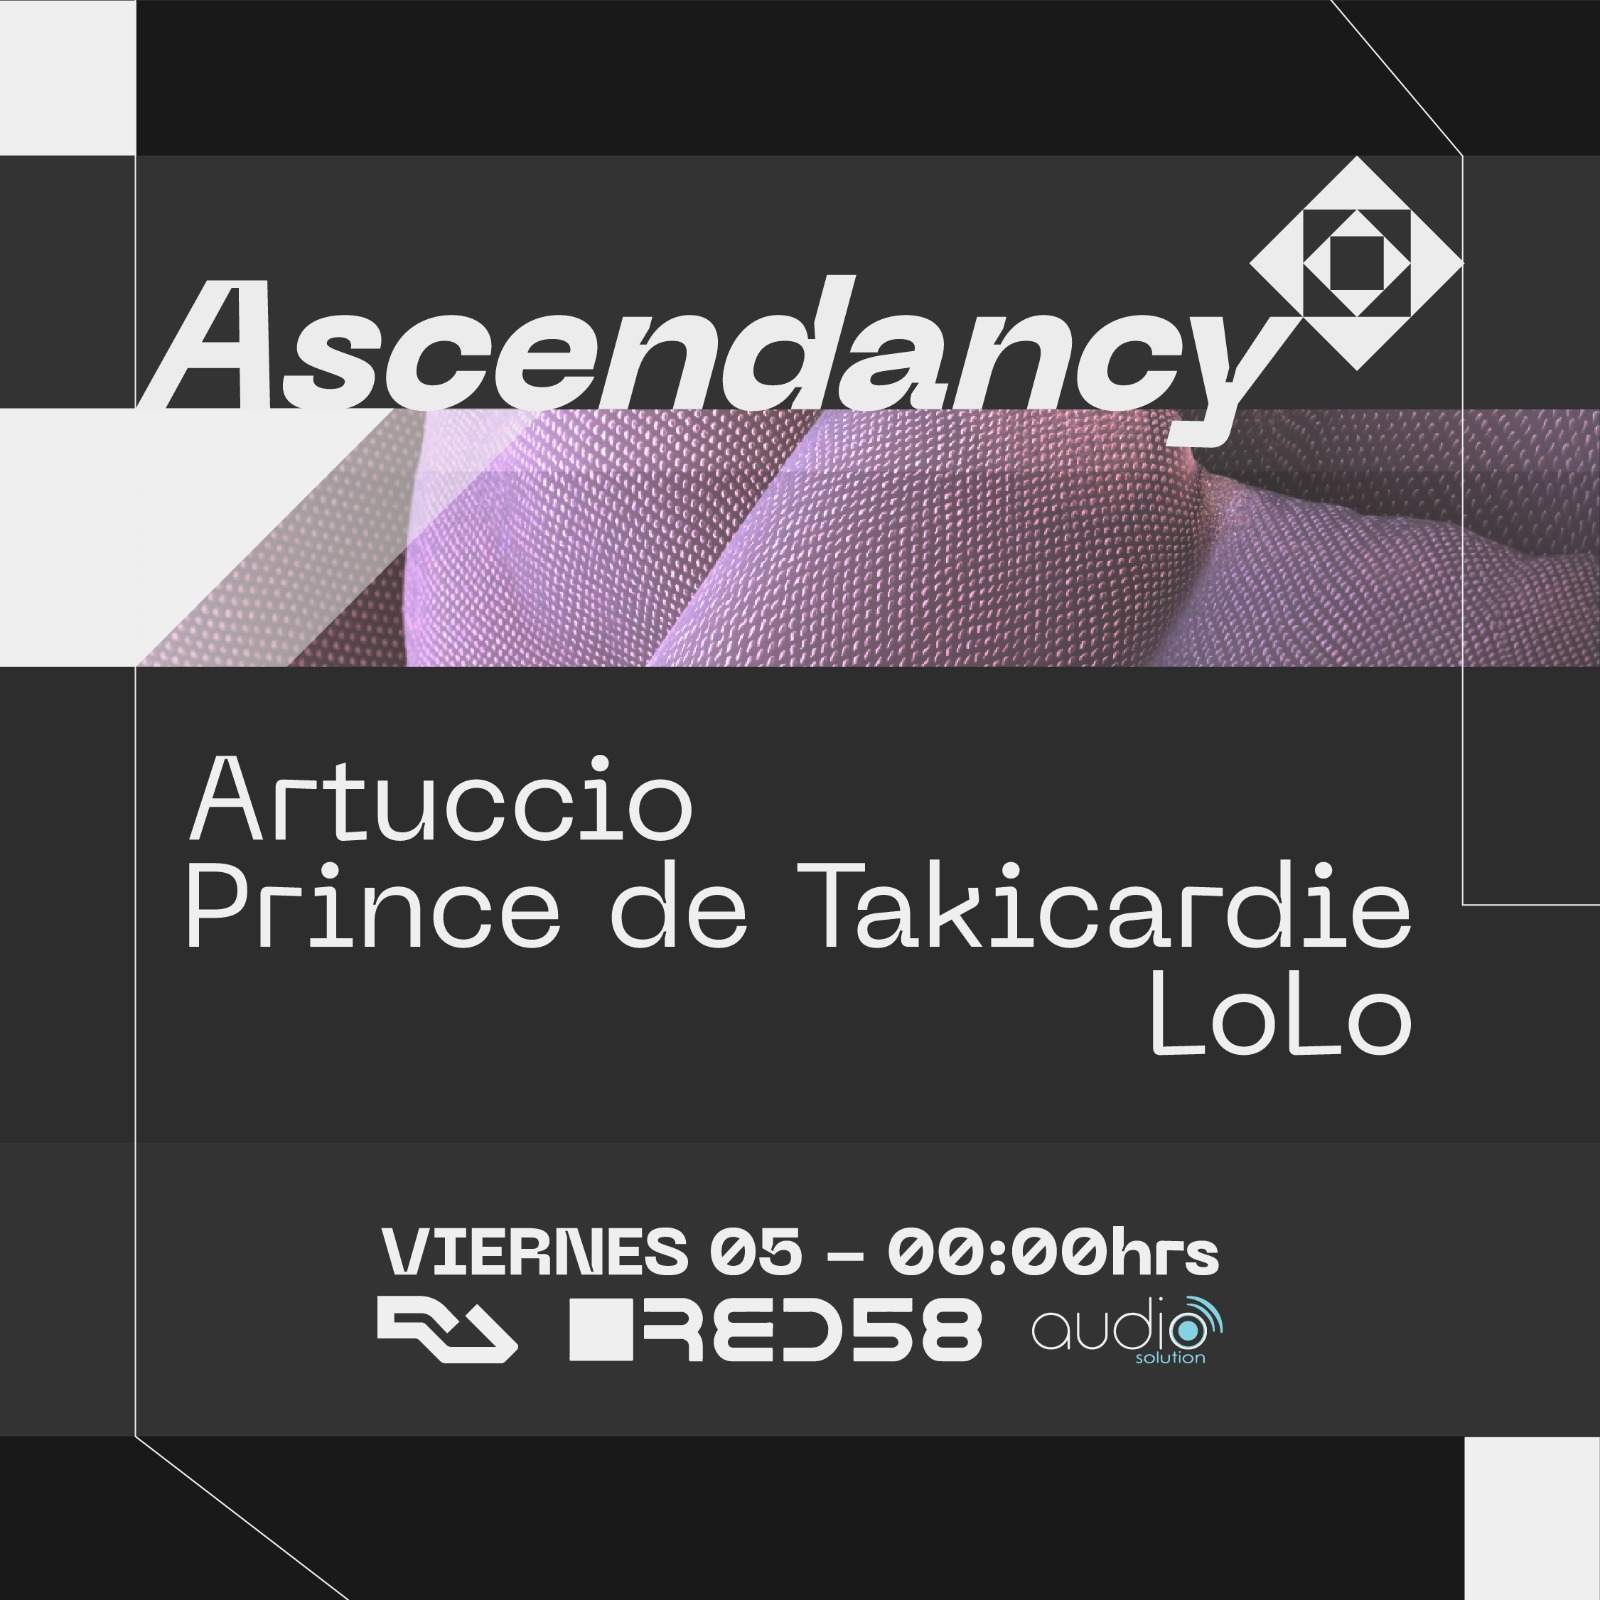 Ascendancy with Prince de Takicardie, Artuccio & Lolo - フライヤー表